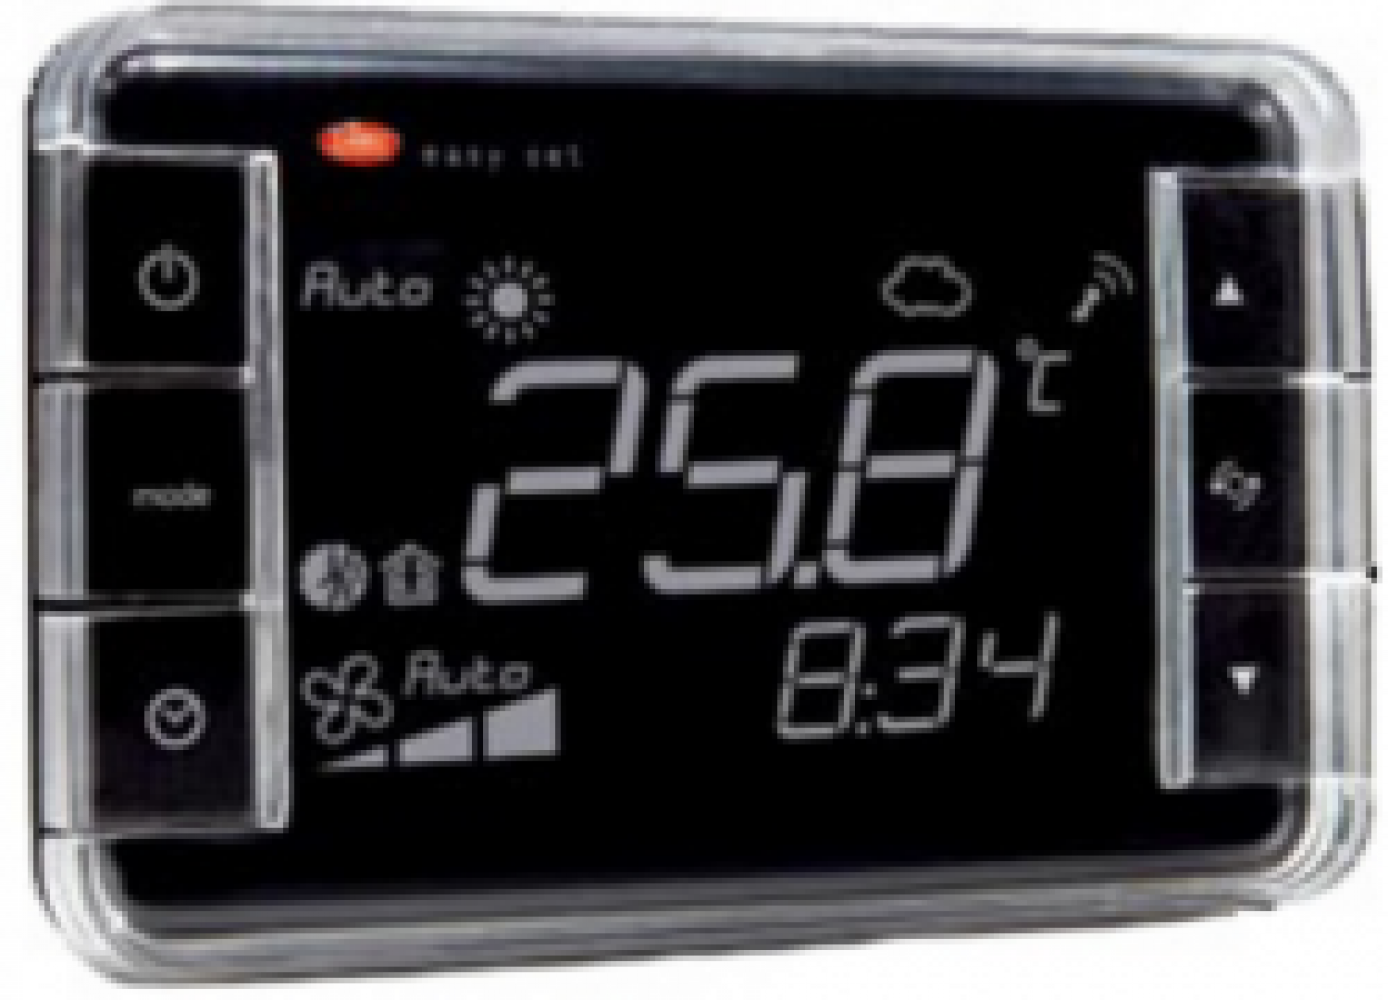 EW01TB1200 Термостат Easyset для e-dronic, контроль температуры + влажности, корпус белого цвета, &quot;инверсное&quot; отображение